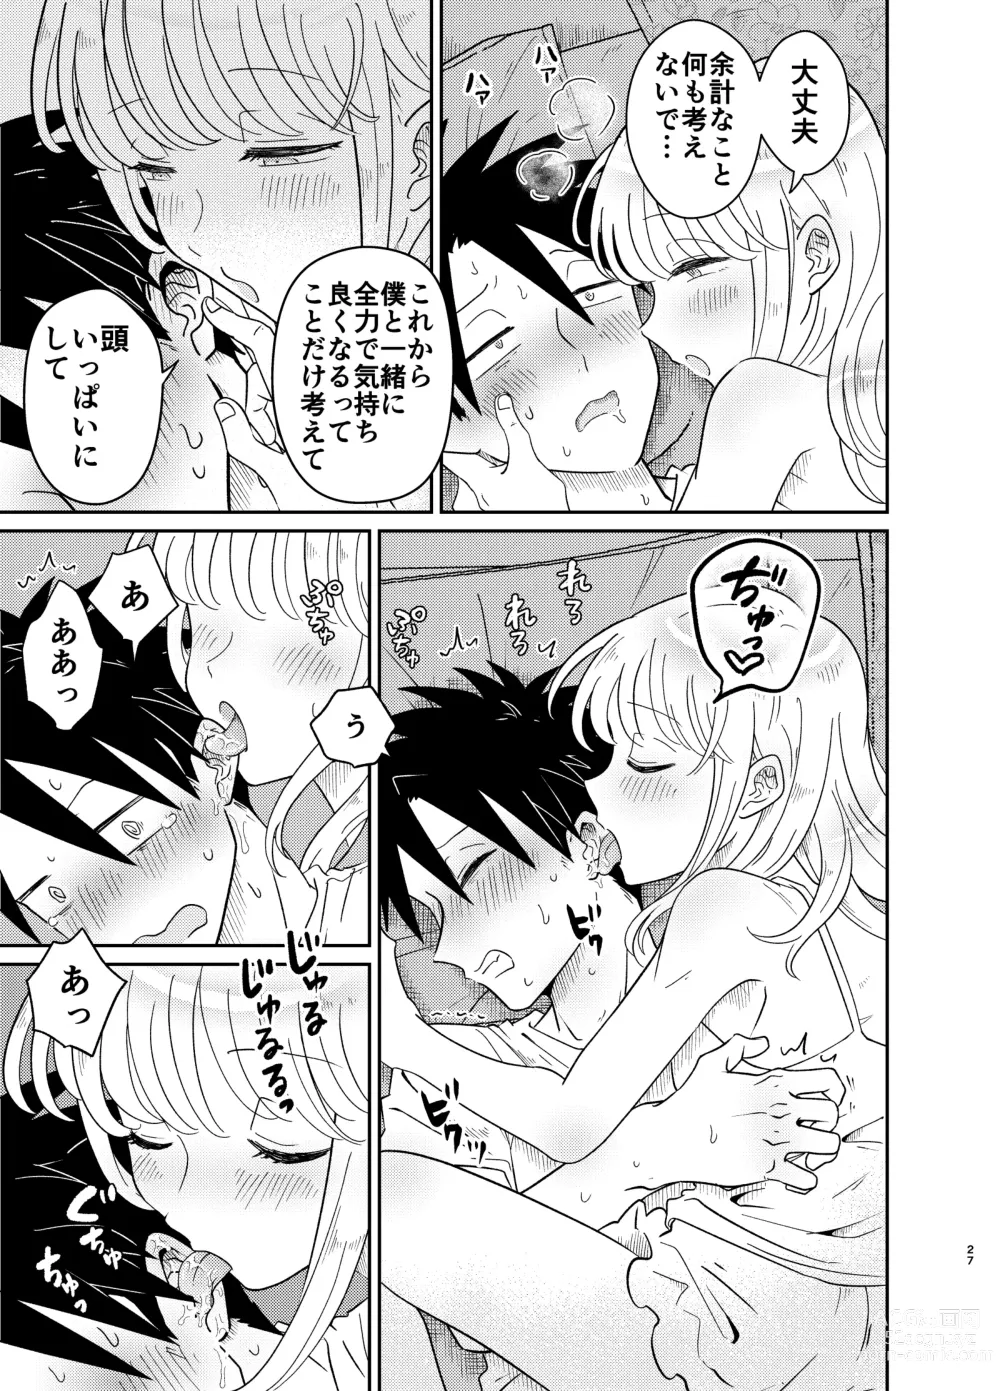 Page 27 of doujinshi Mechakucha Kawaikute Ecchi na Itoko wa Suki desu ka?